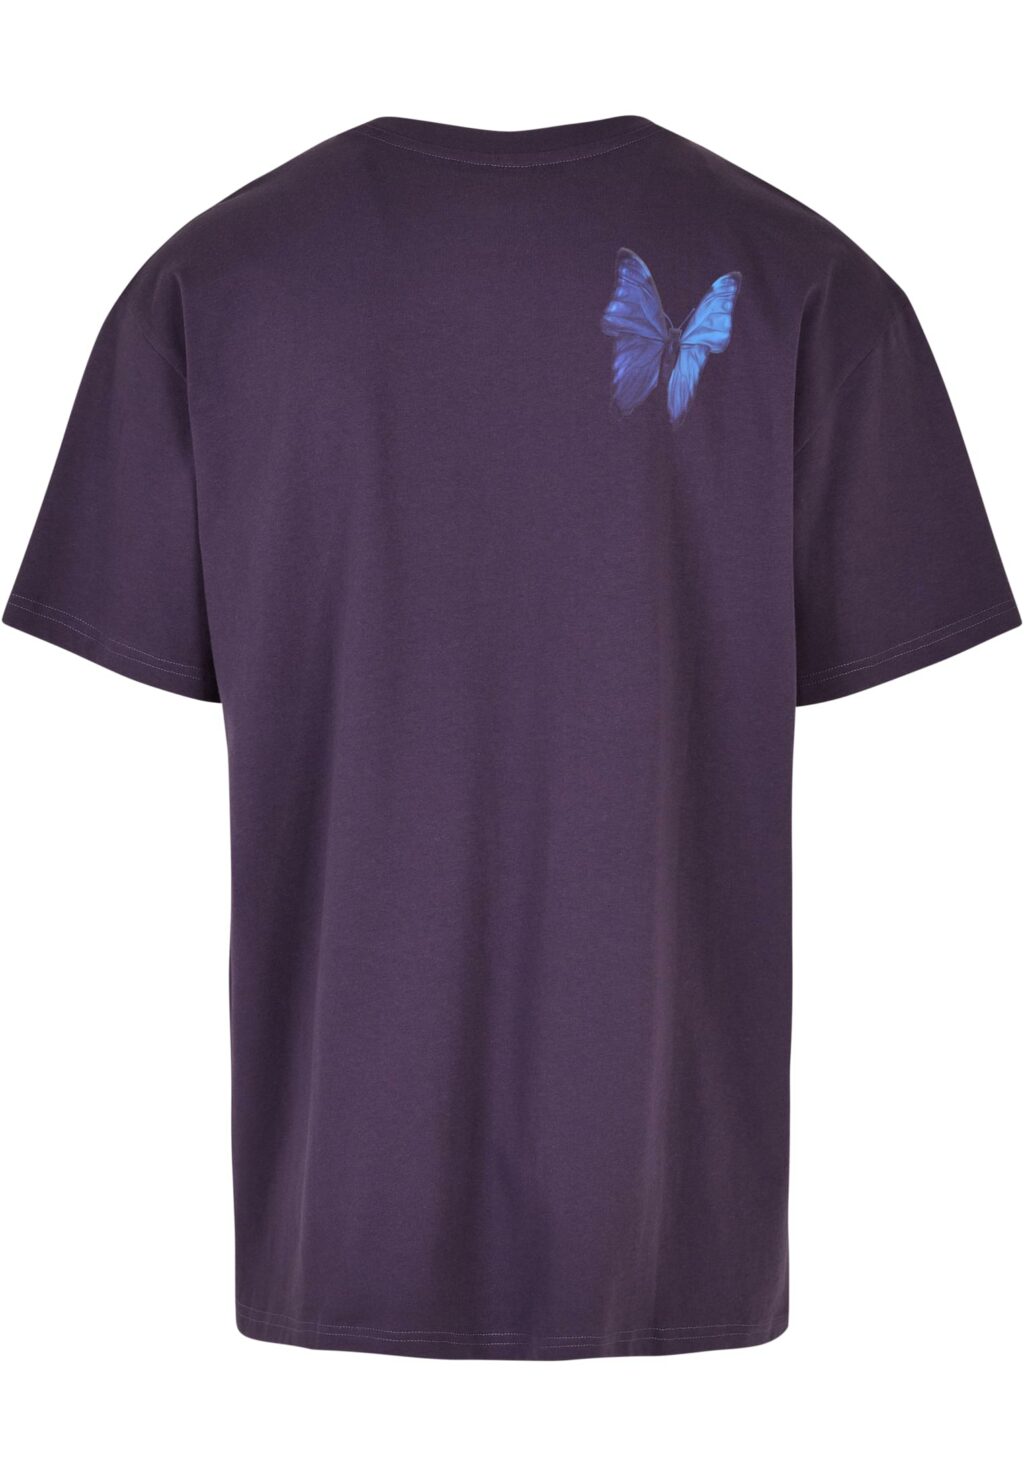 Le Papillon Oversize Tee purplenight MT1899